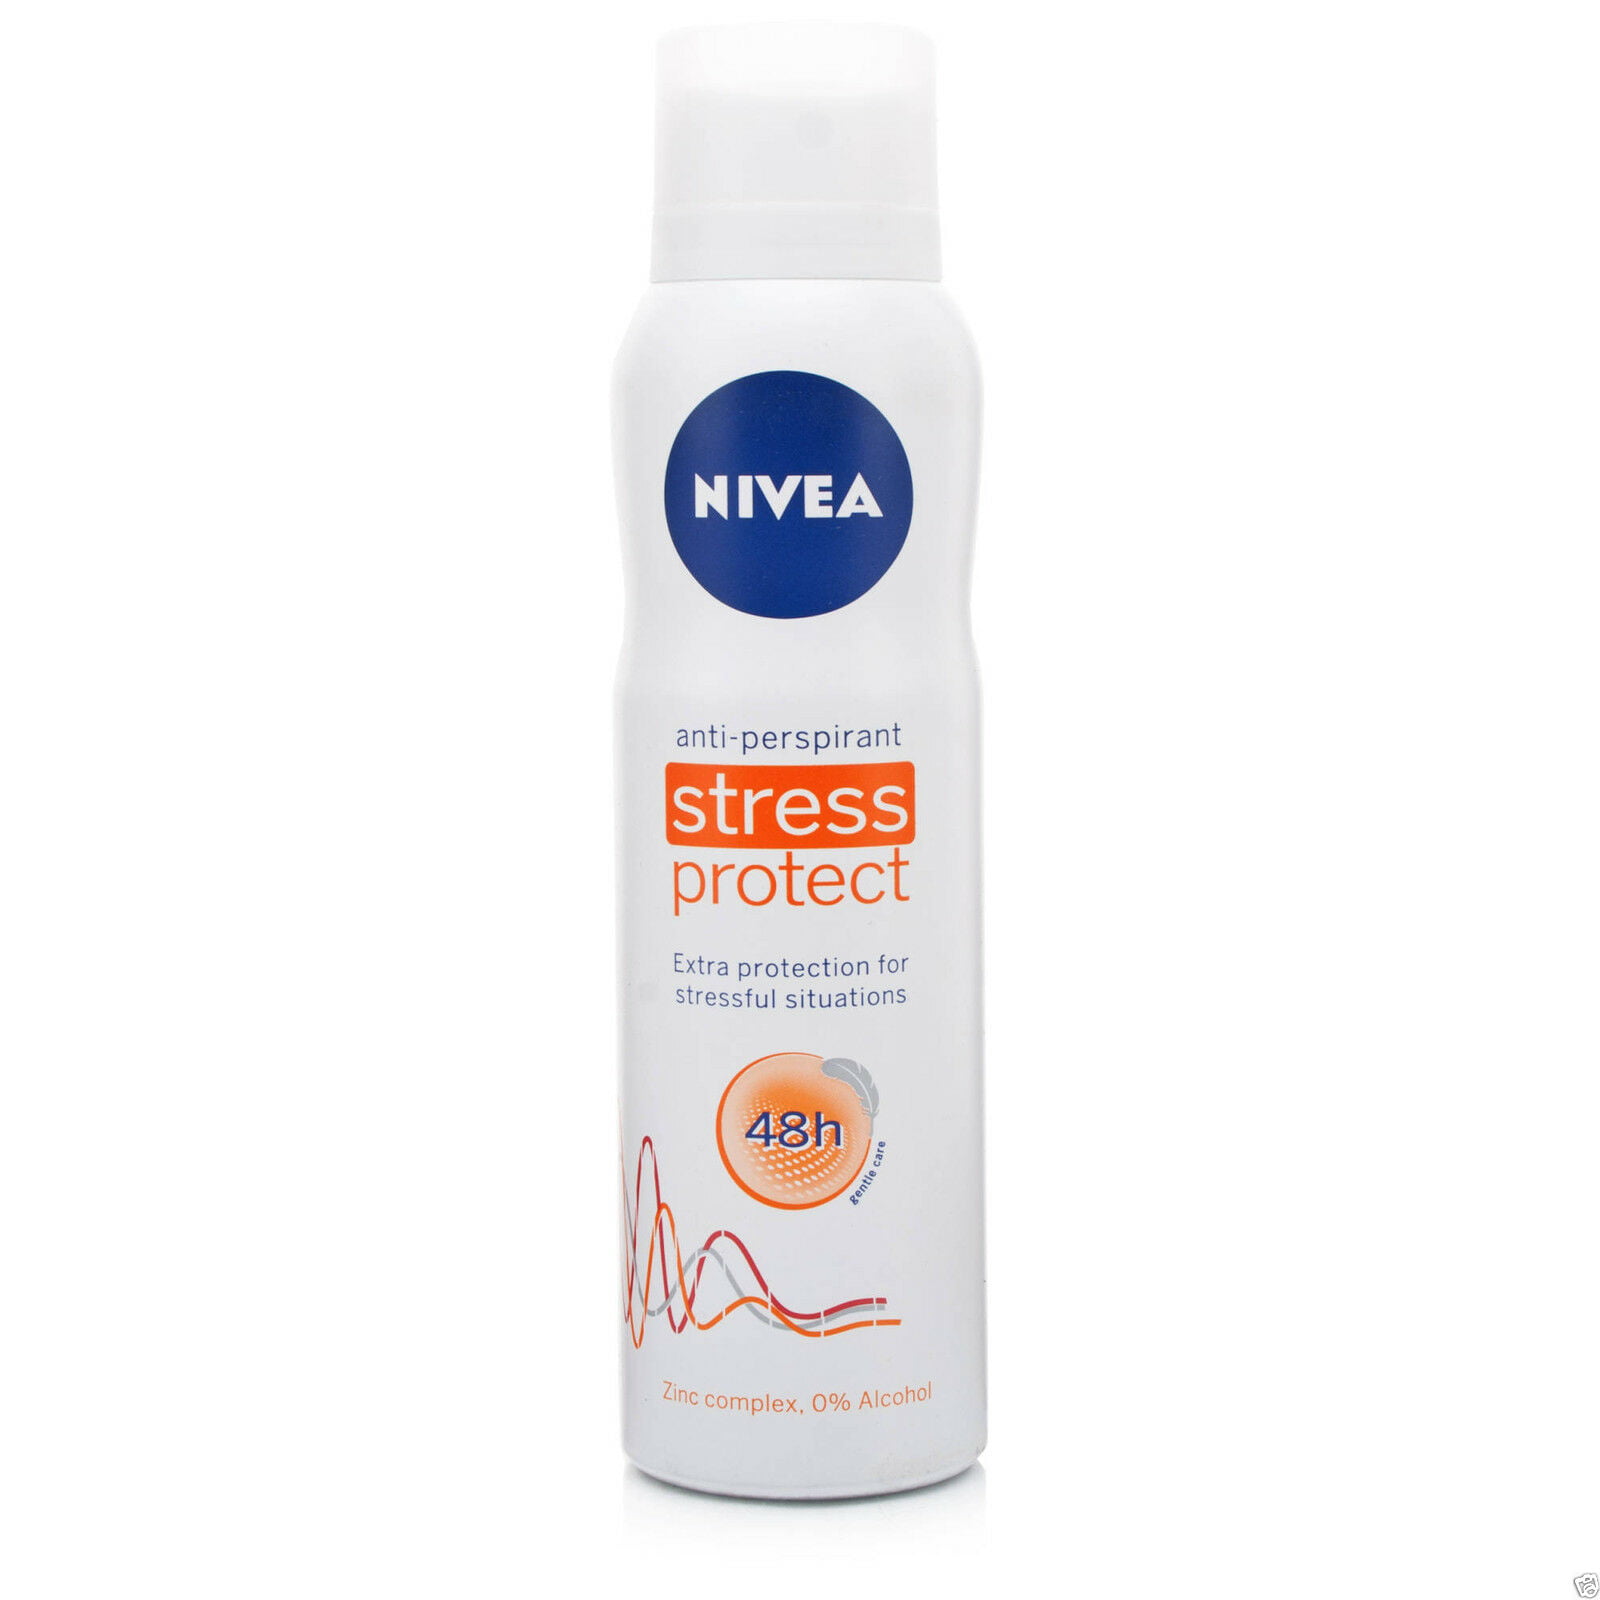 Nivea Stress Anti-Perspirant Zinc Complex 0% Alcohol - 150ml (LOT of 2) -